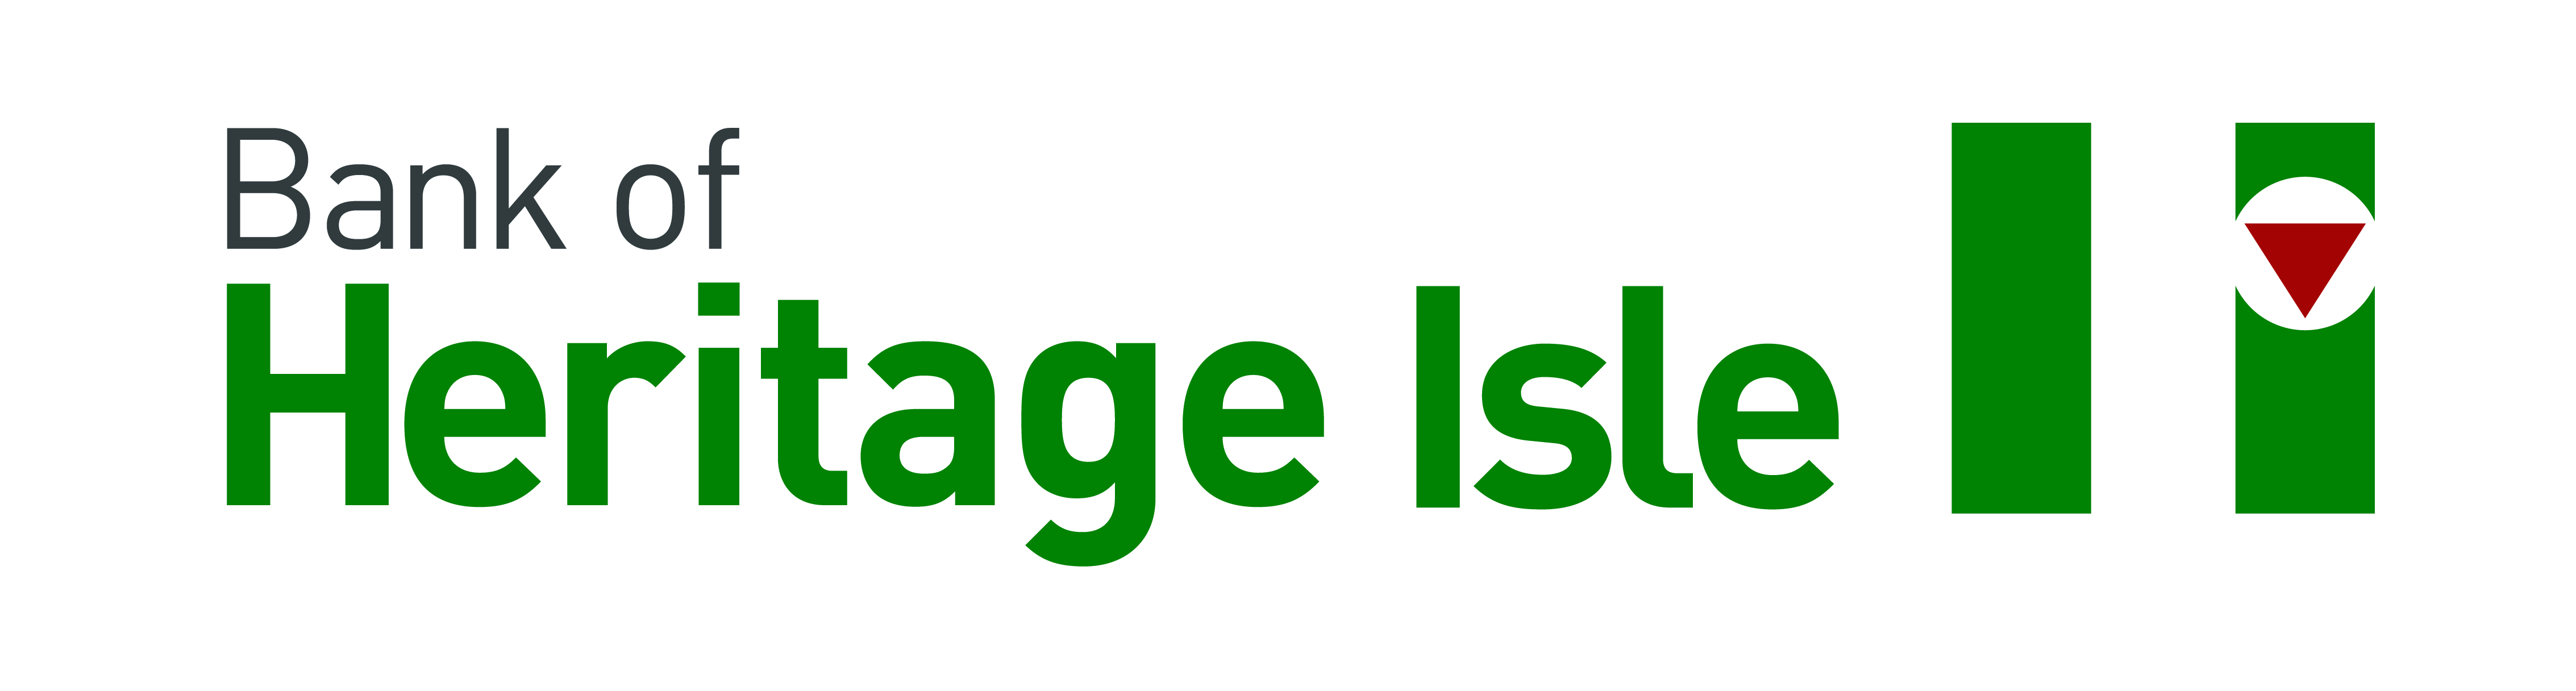 Bank of Heritage Isle logo